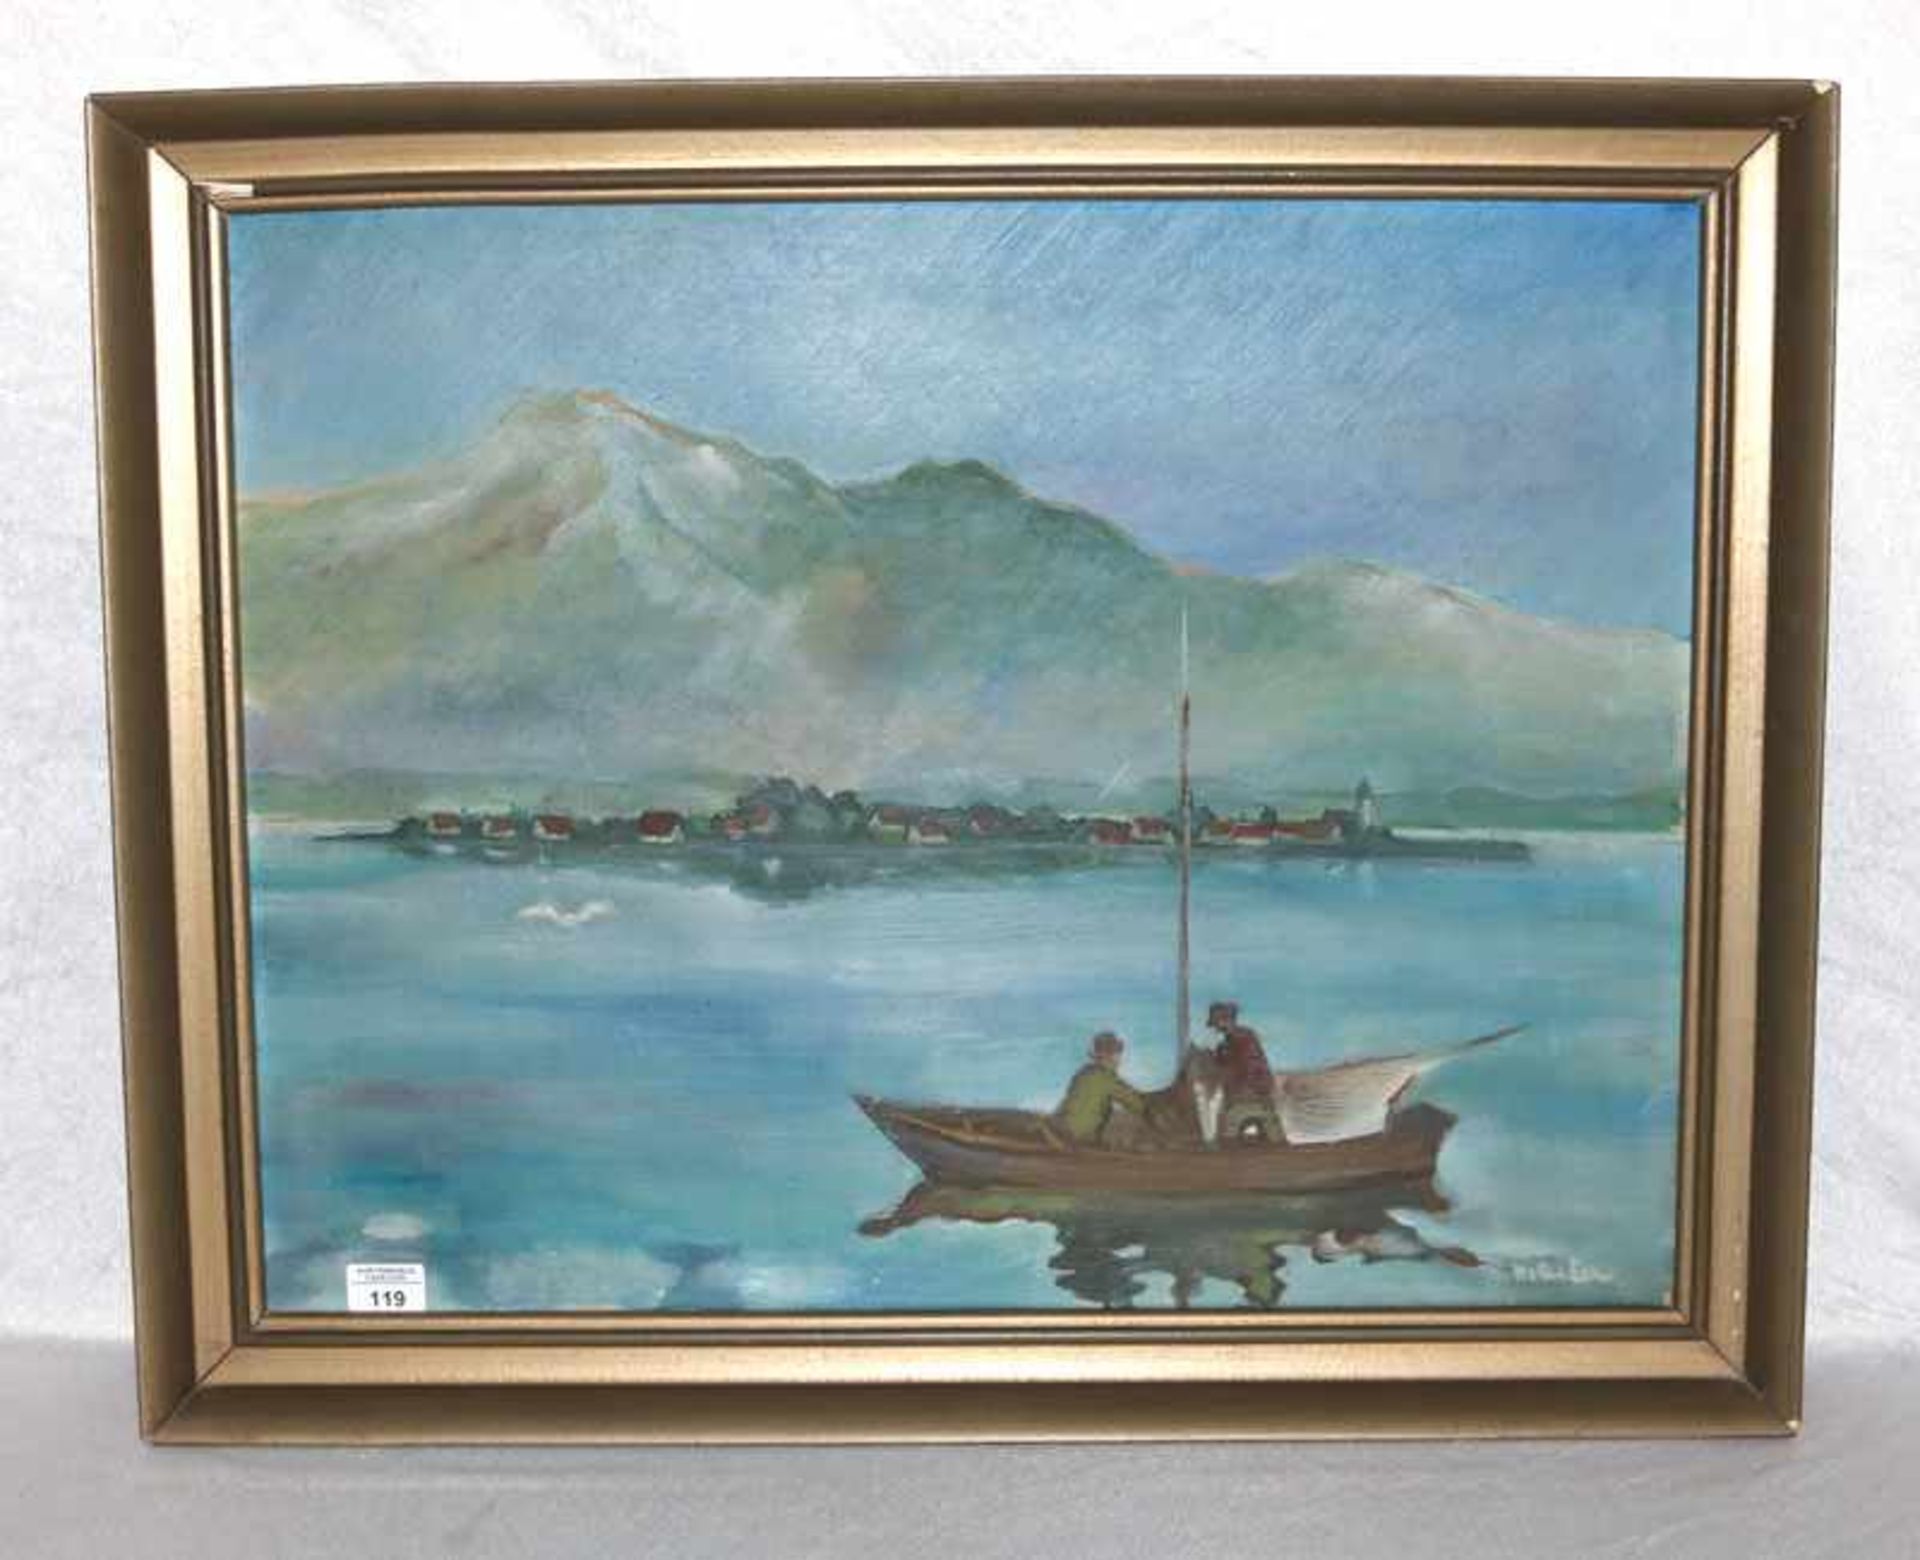 Gemälde ÖL/LW 'Fischerboot vor Frauenchiemsee', signiert Walter Eck, * 1895 Würzburg + 1973 München,